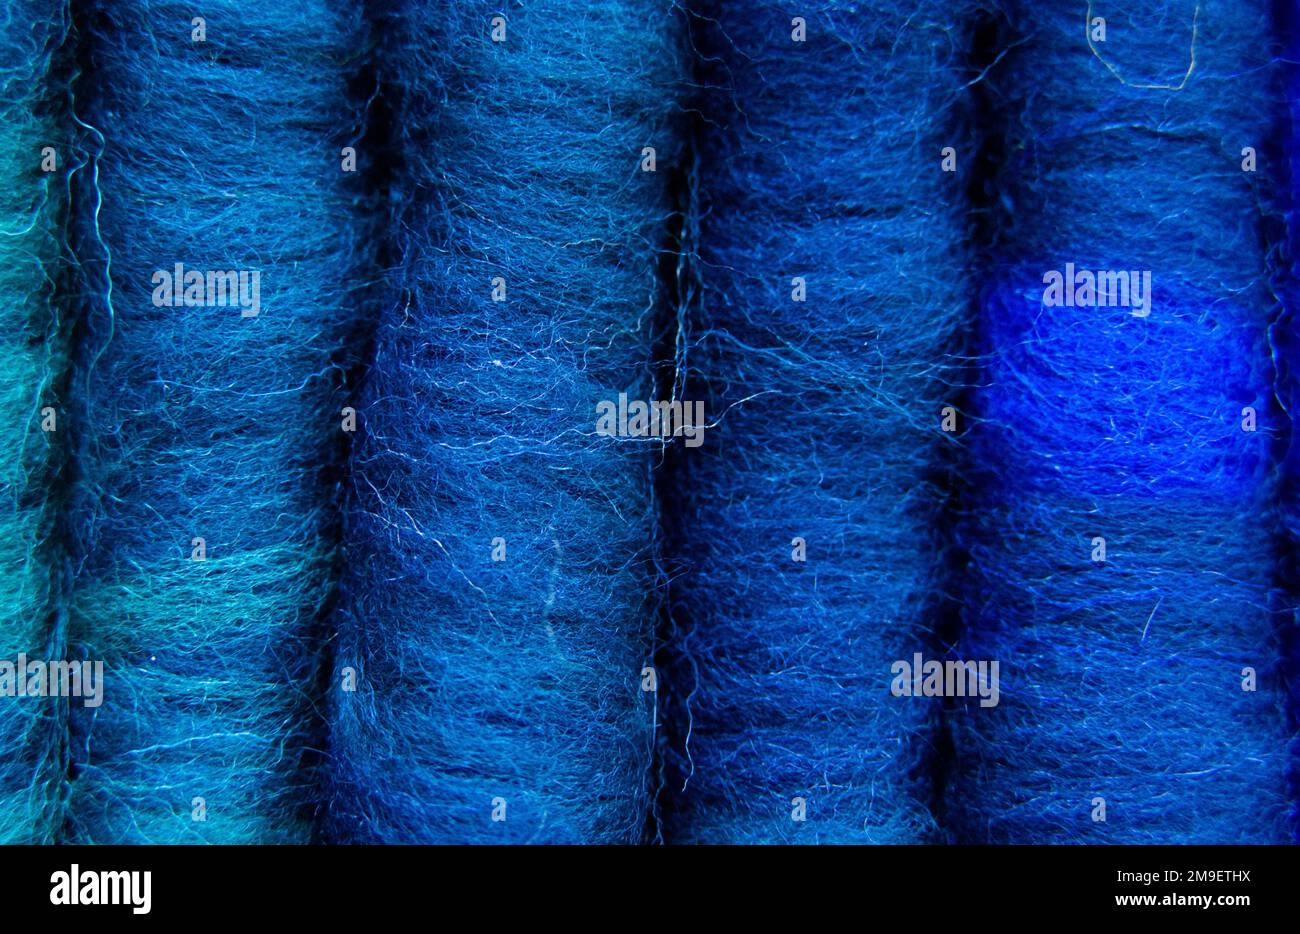 Primo piano di una serie di stracci in lana merino in varie sfumature di blu. I rotoli sono rotoli di fibra come la lana, generalmente utilizzati per la filatura del filato di lana. Foto Stock